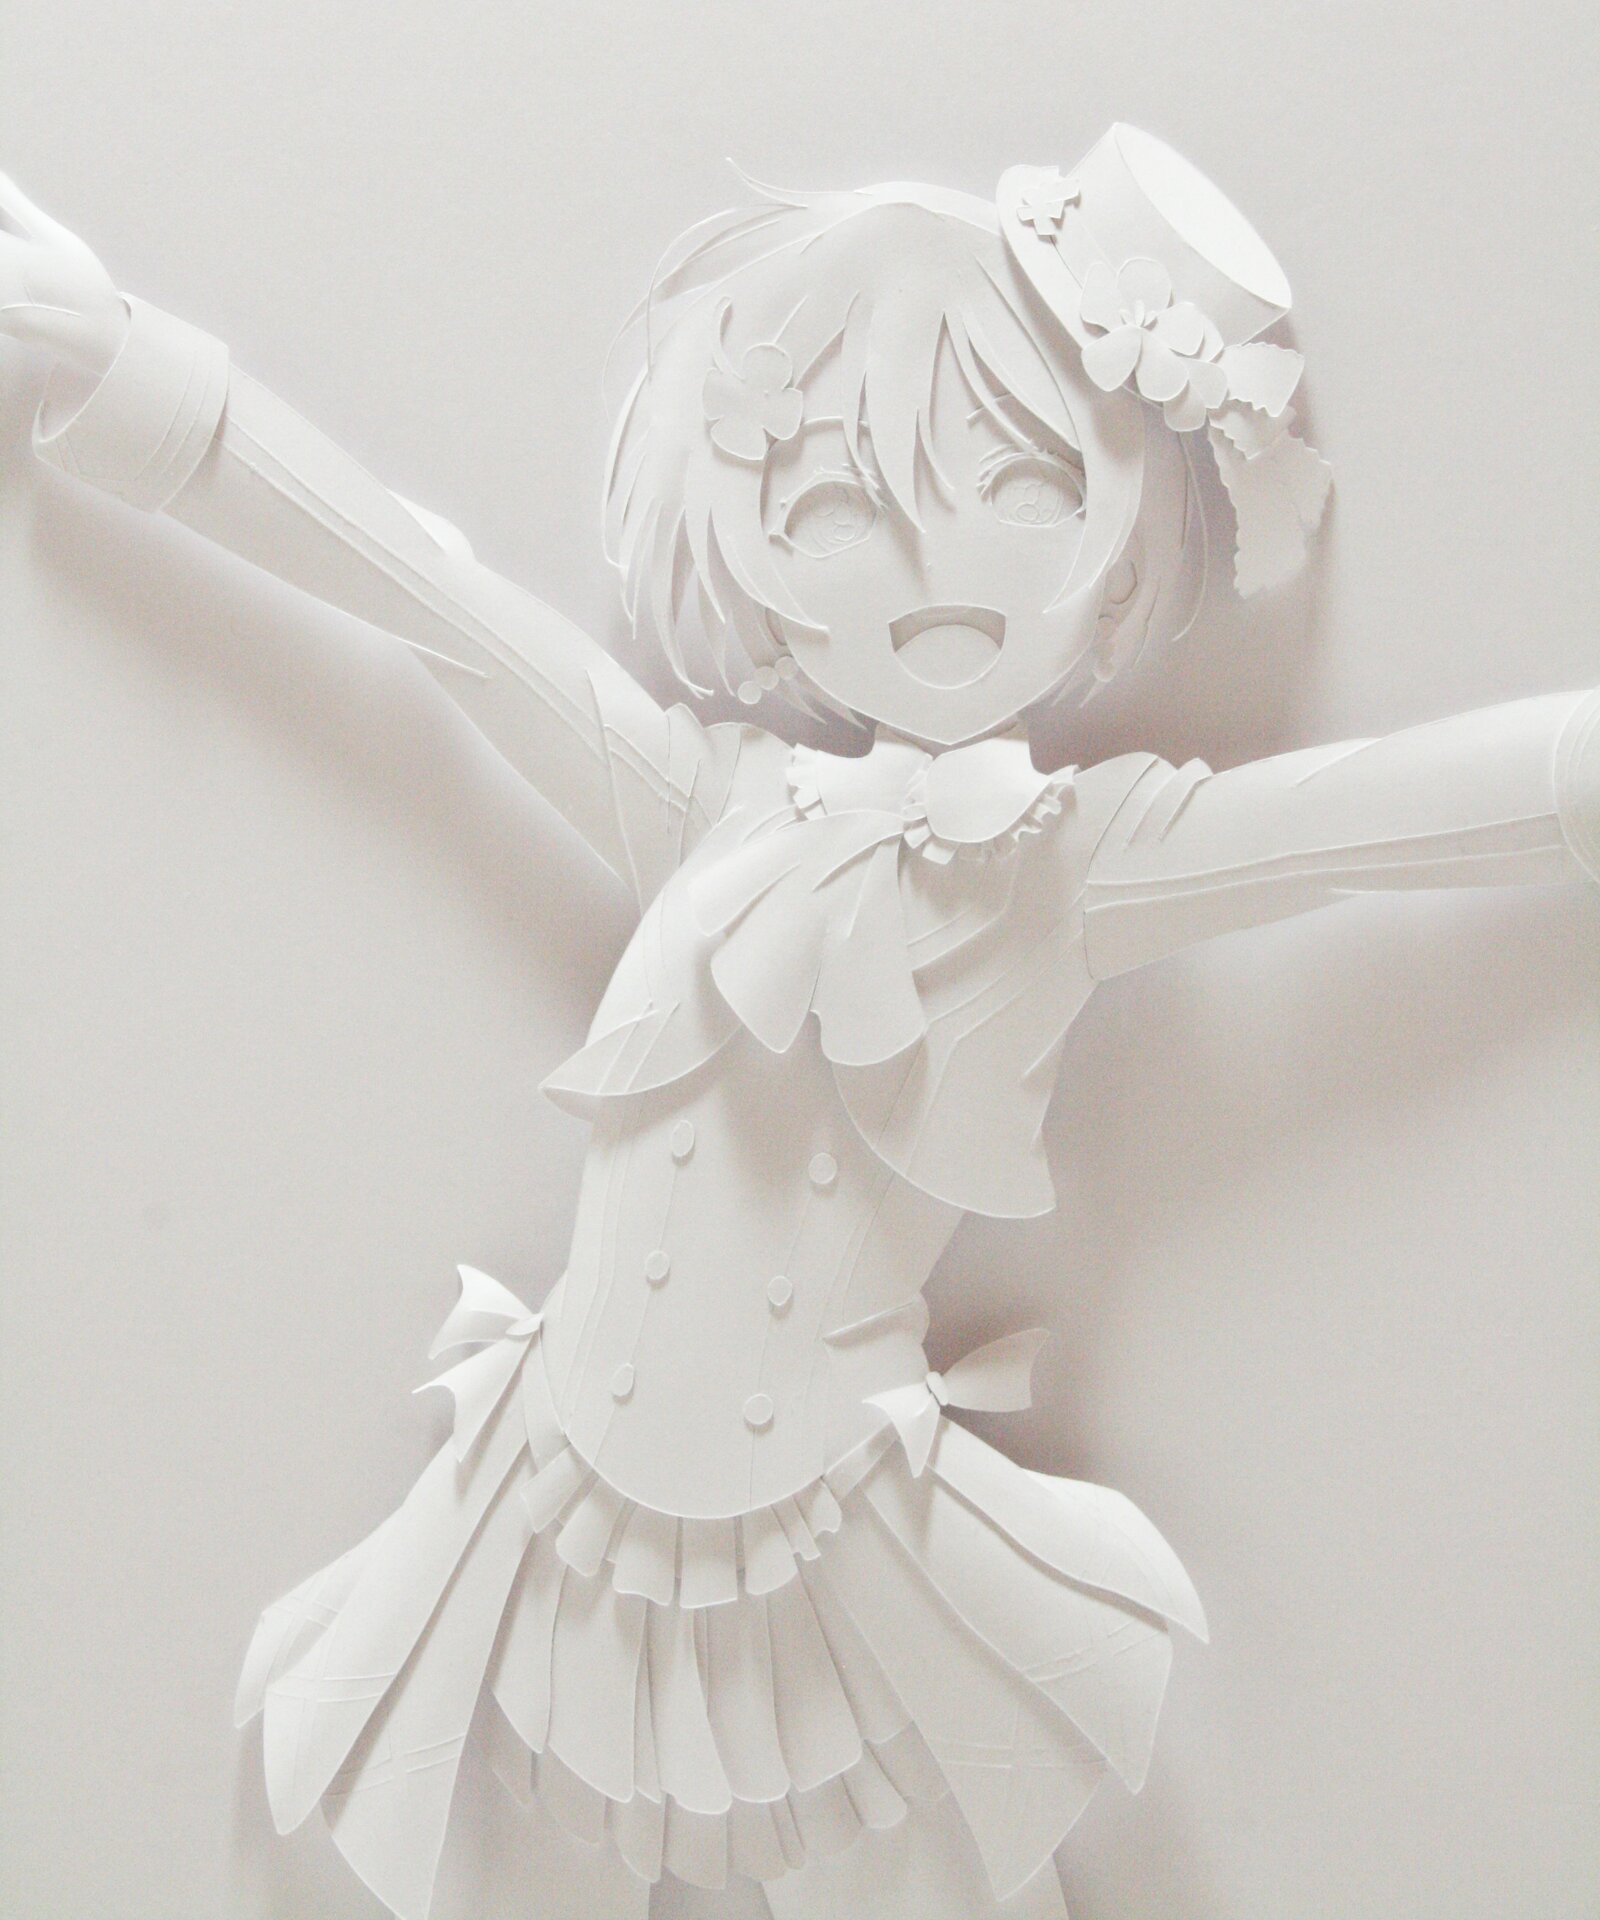 GraPhig  Anime paper craft figures  animeukcom